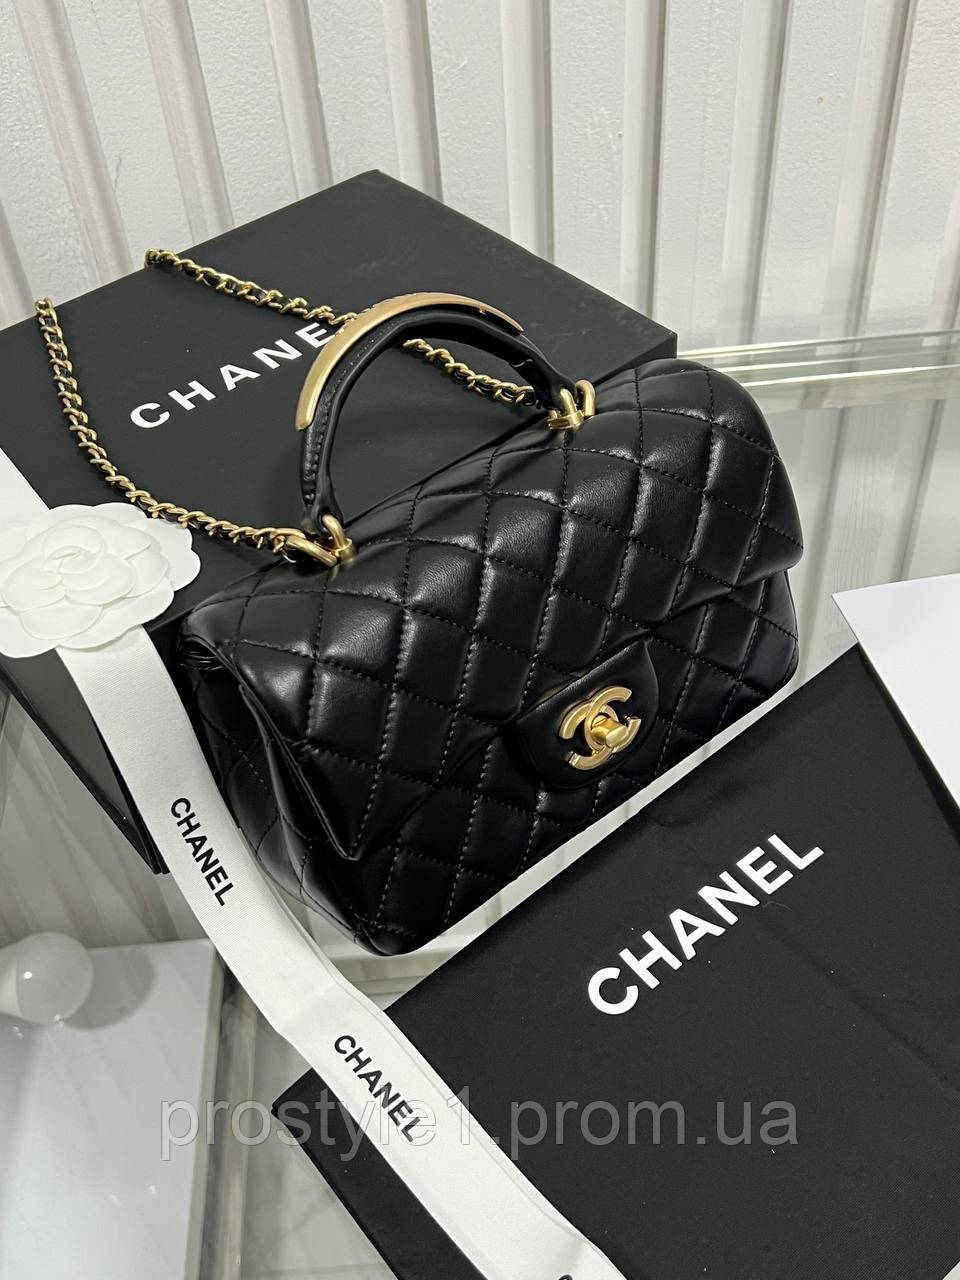 Жіноча сумочка Шанель